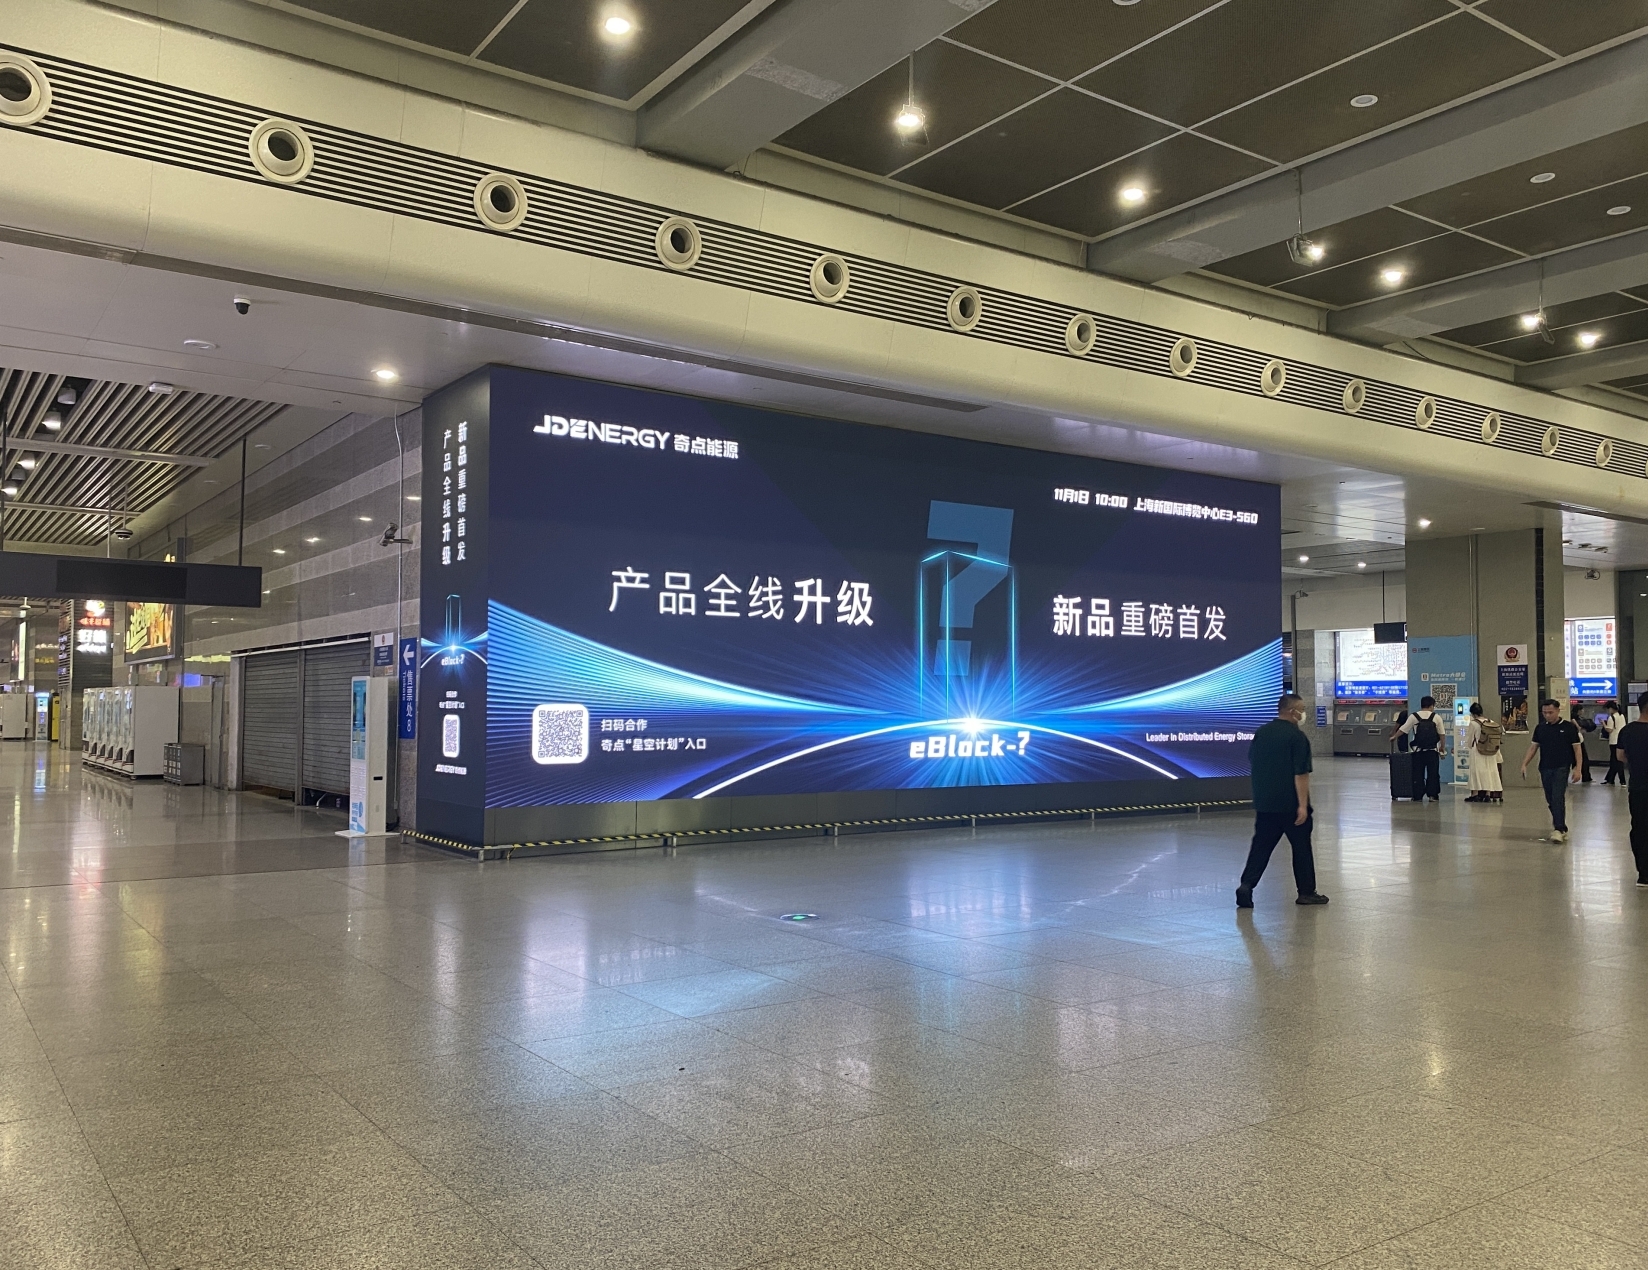 上海虹桥站到达通道高铁&地铁交汇处3D双屏